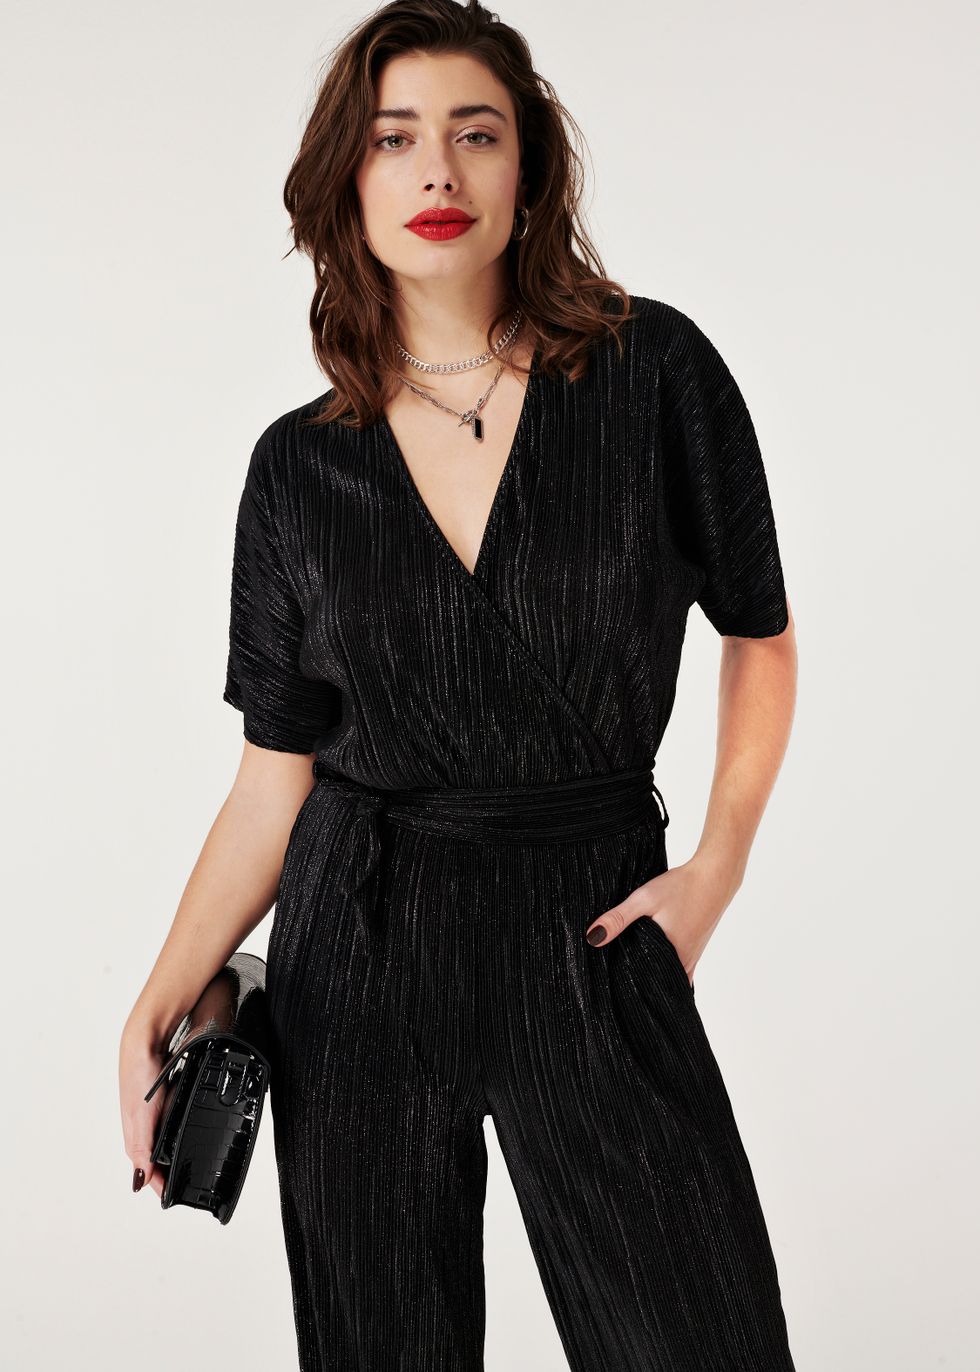 Monica boete Prestige Costes Fashion | Official Webshop - Glitter Plisse Jumpsuit